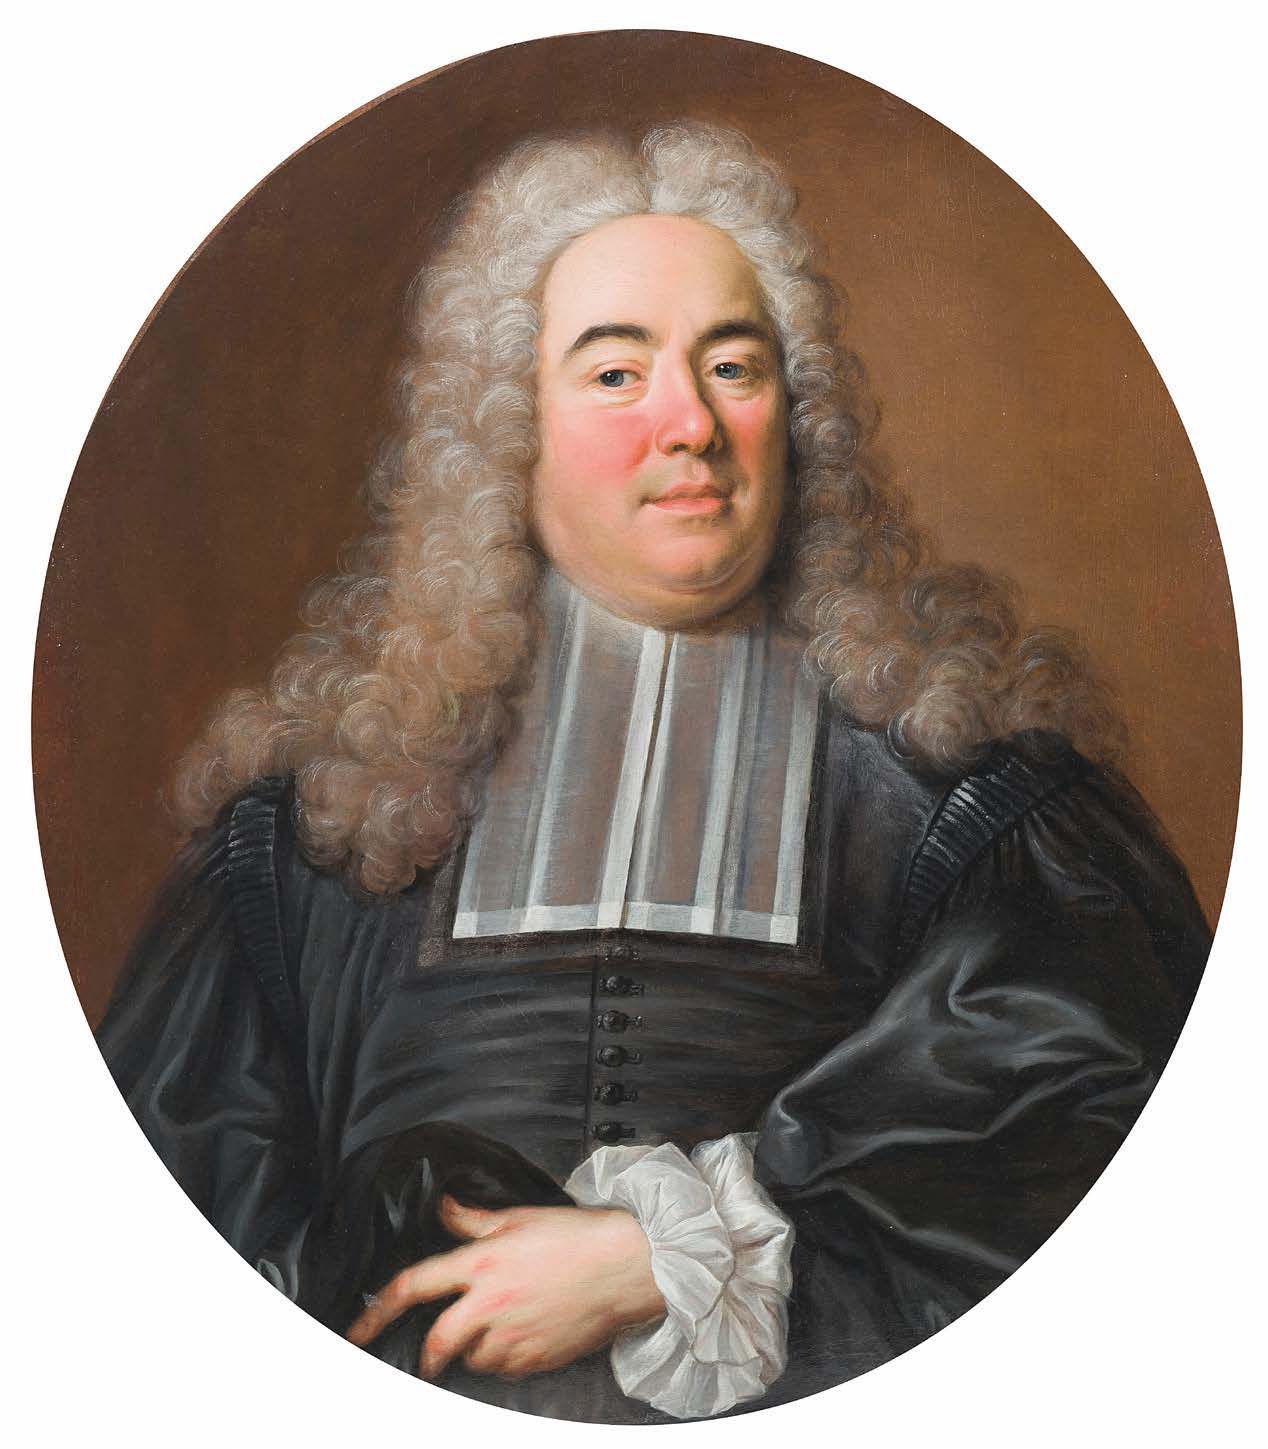 Jean François DELYEN (Gand 1684 - Paris 1761) 巴伦坦总统肖像
椭圆形画布 74 x 65 cm
无框
出处：
- &hellip;